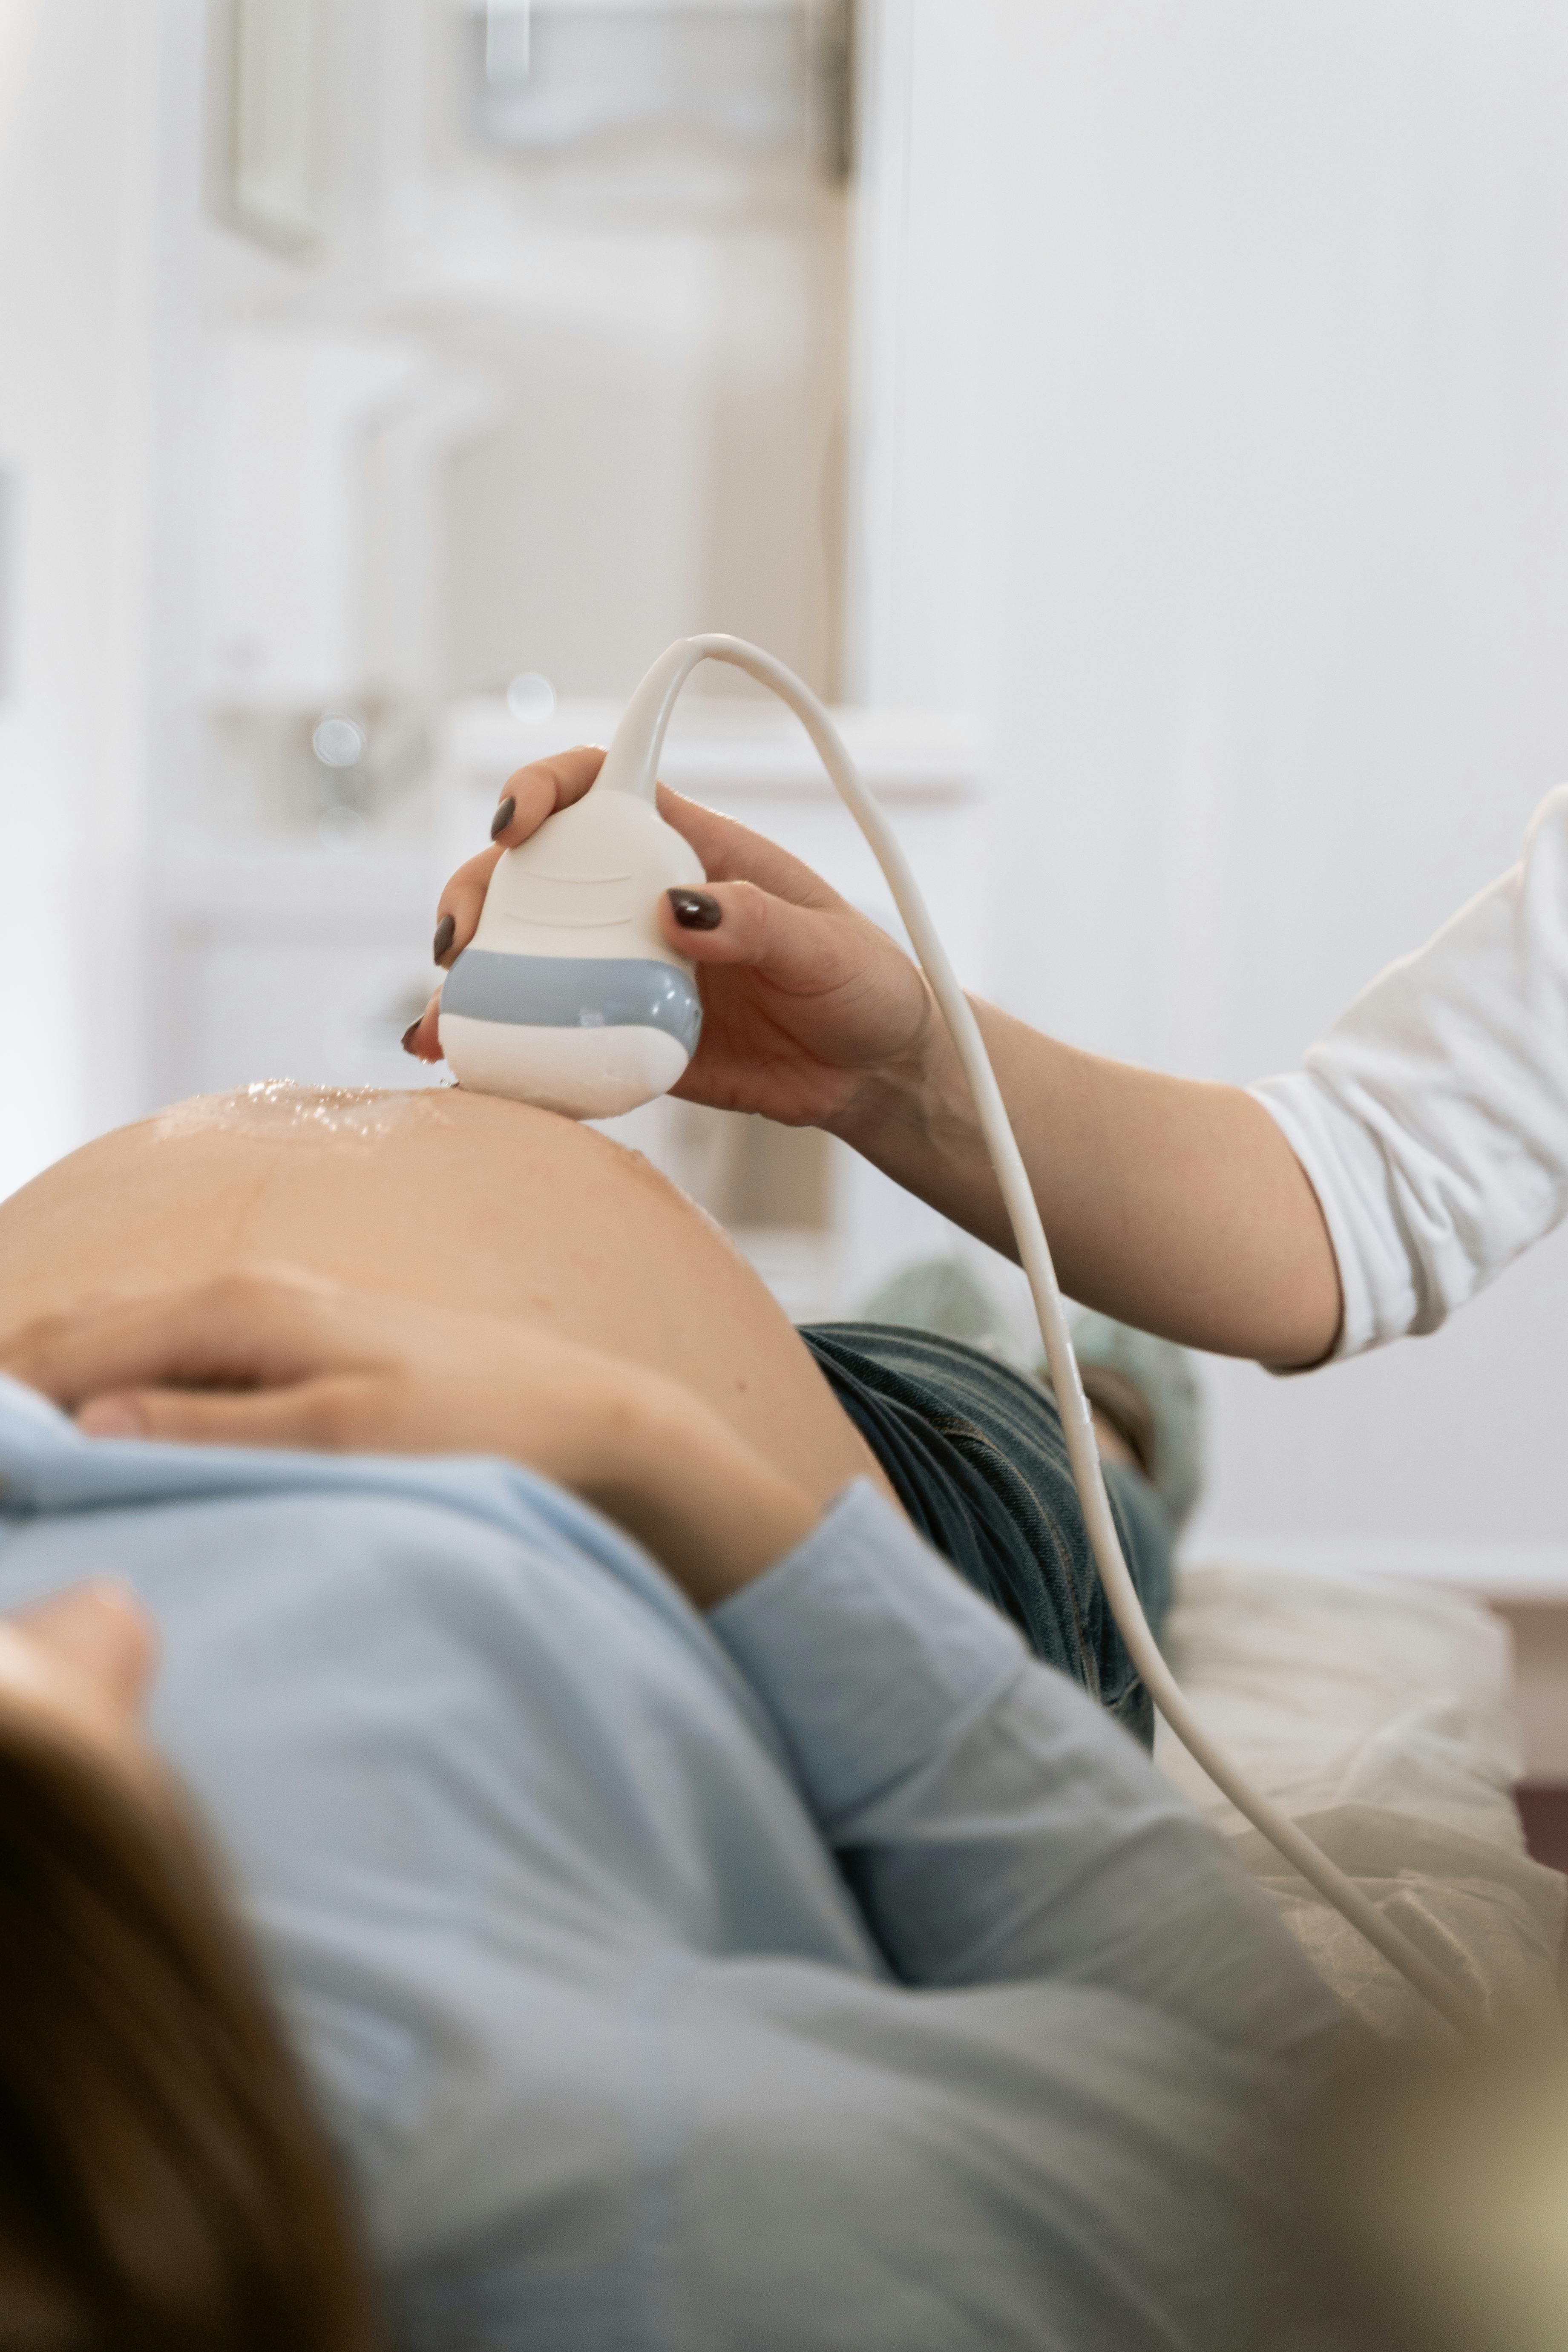 Une femme enceinte lors d'une échographie | Source : MART PRODUCTION sur Pexels